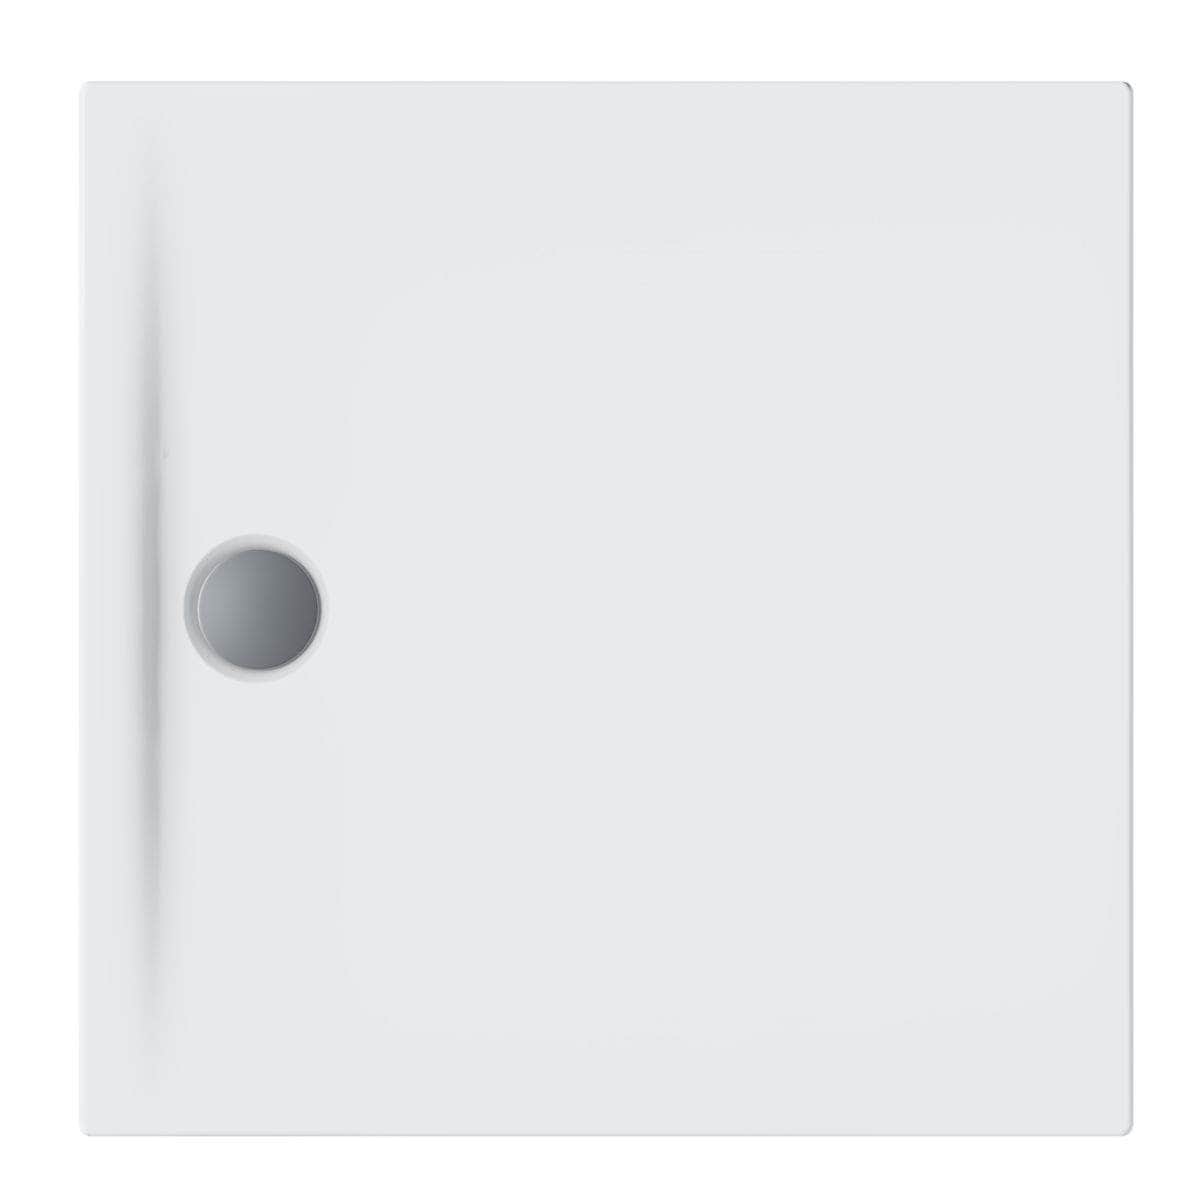 Receveur de douche  -  Receveur céramique DESIGN 2 blanc antidérapant 90x90 cm ALTERNA